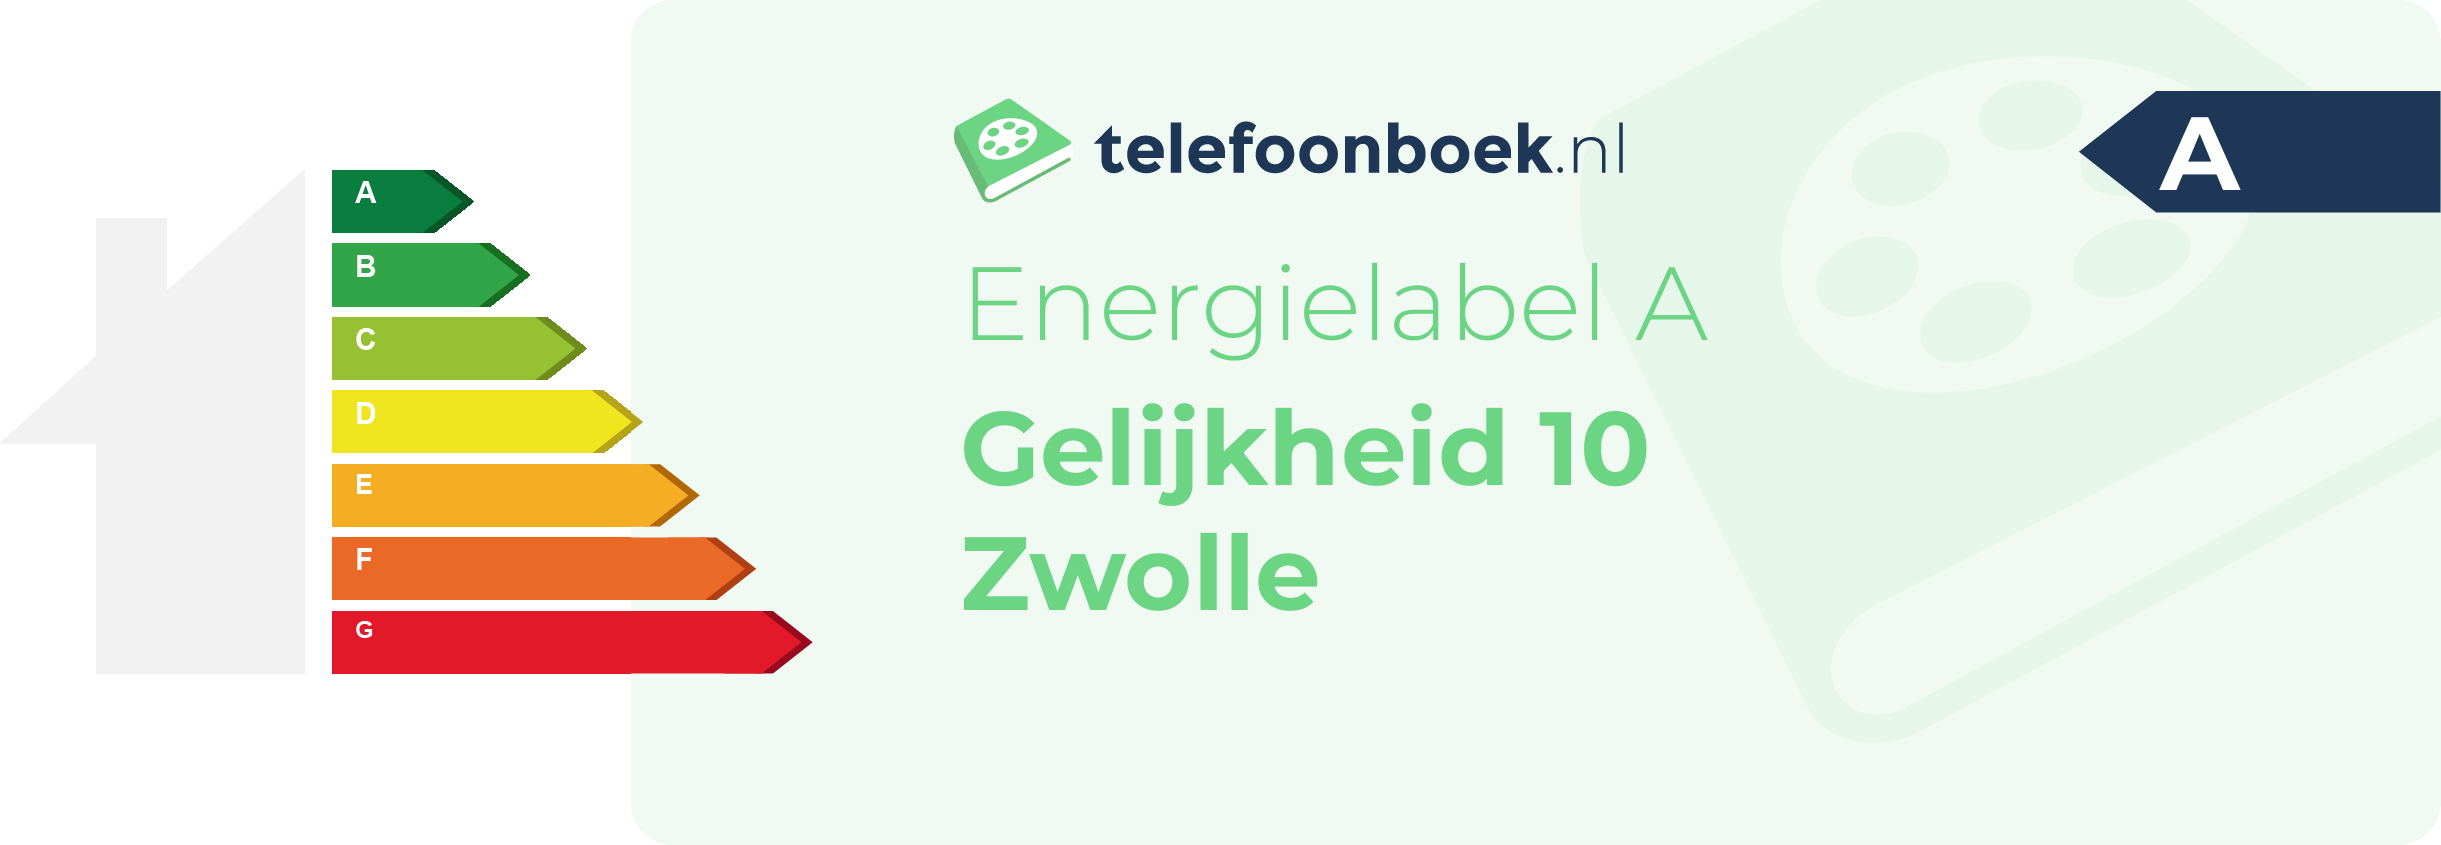 Energielabel Gelijkheid 10 Zwolle